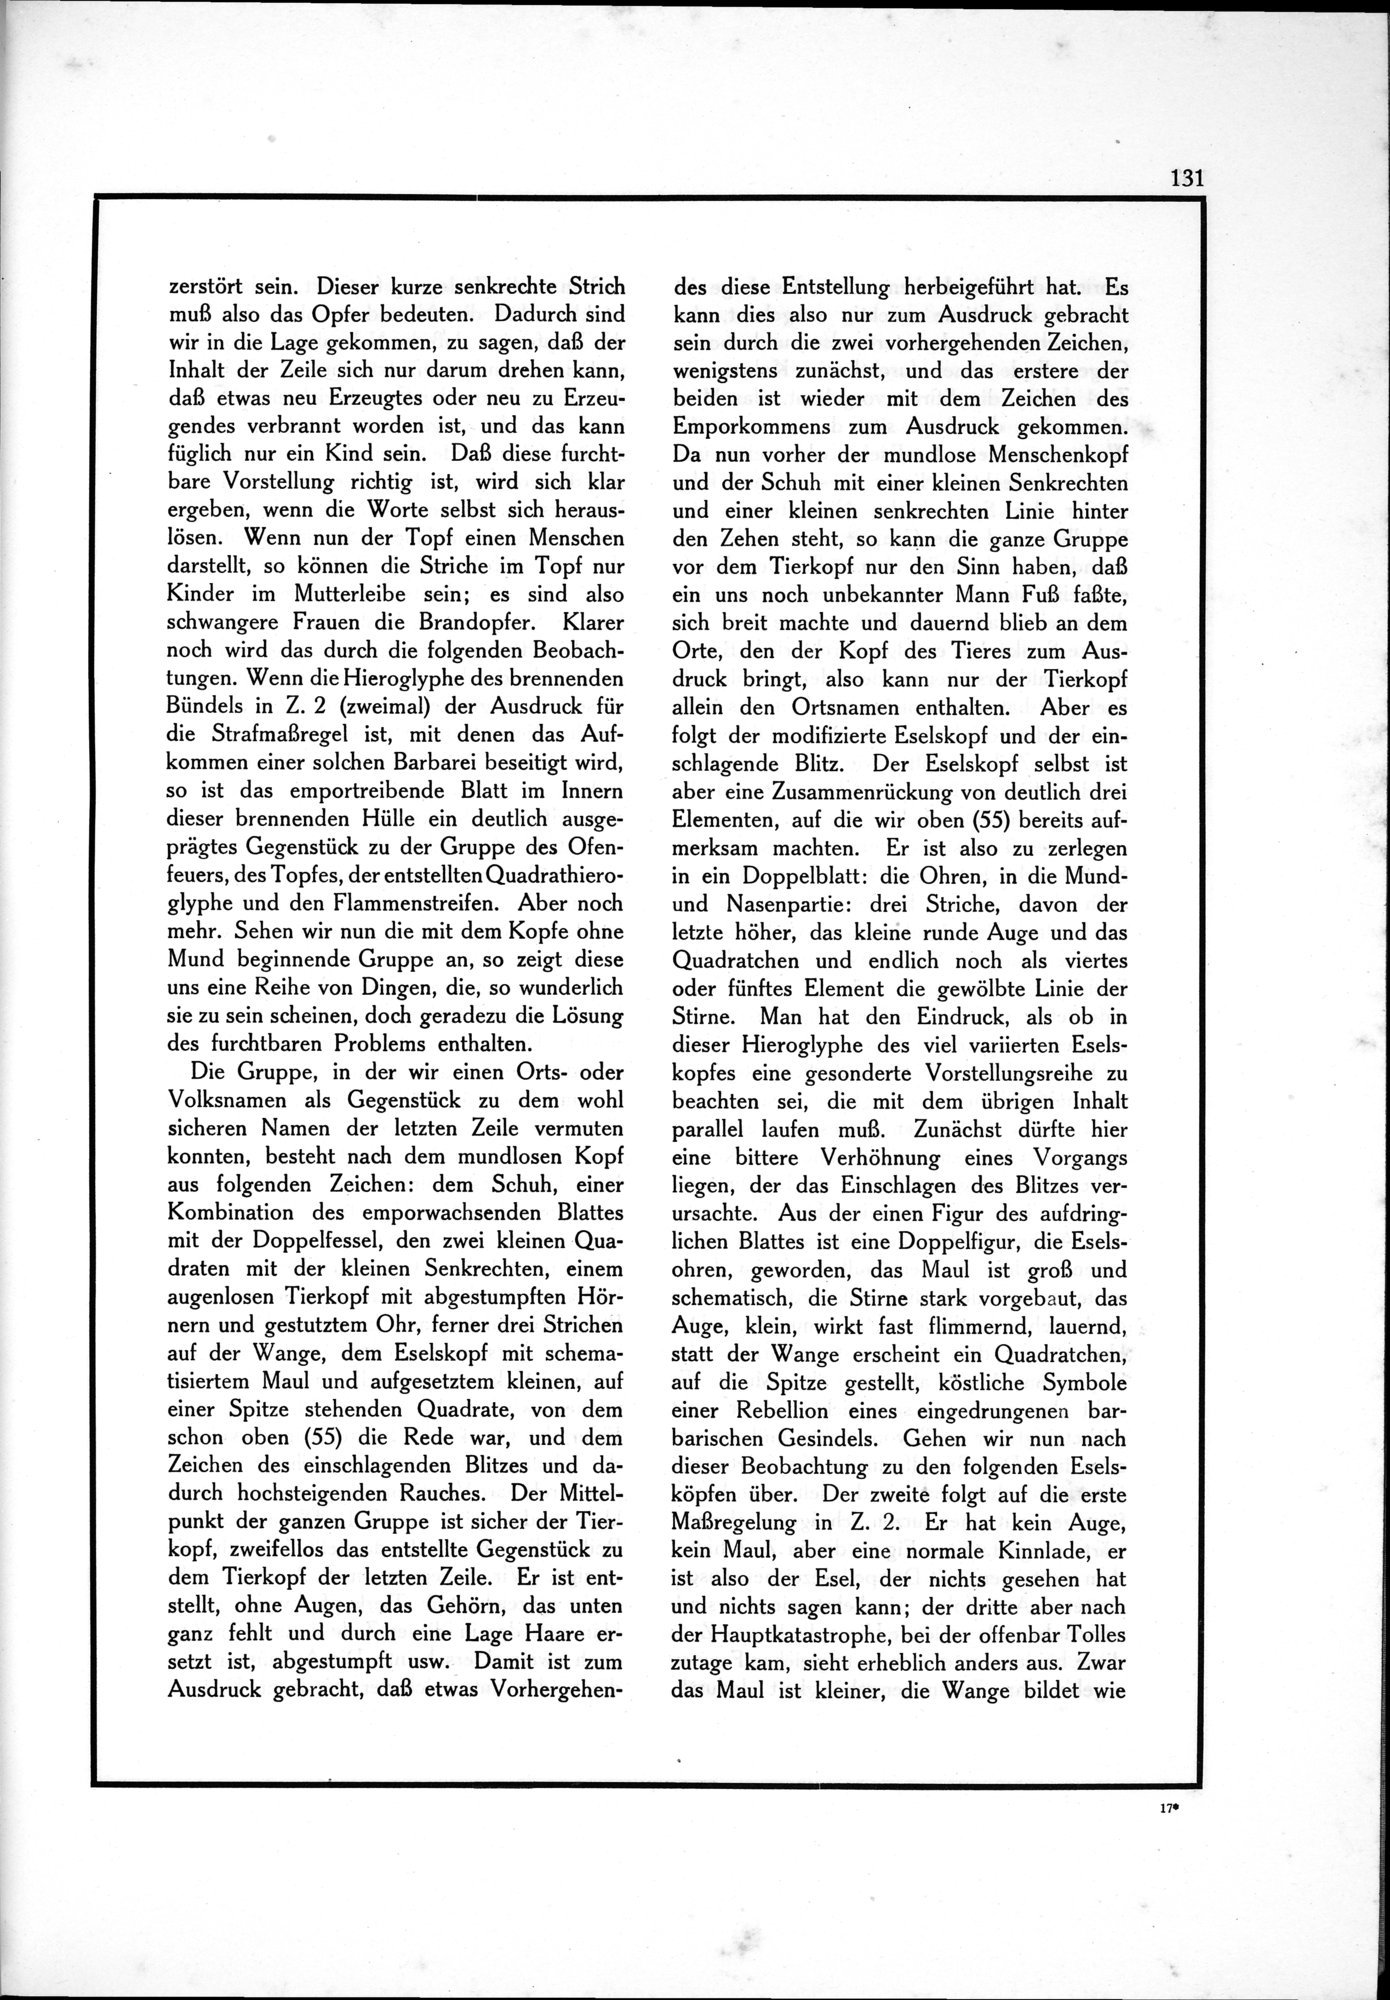 Die Teufel des Avesta und Ihre Beziehungen zur Ikonographie des Buddhismus Zentral-Asiens : vol.1 / Page 135 (Grayscale High Resolution Image)